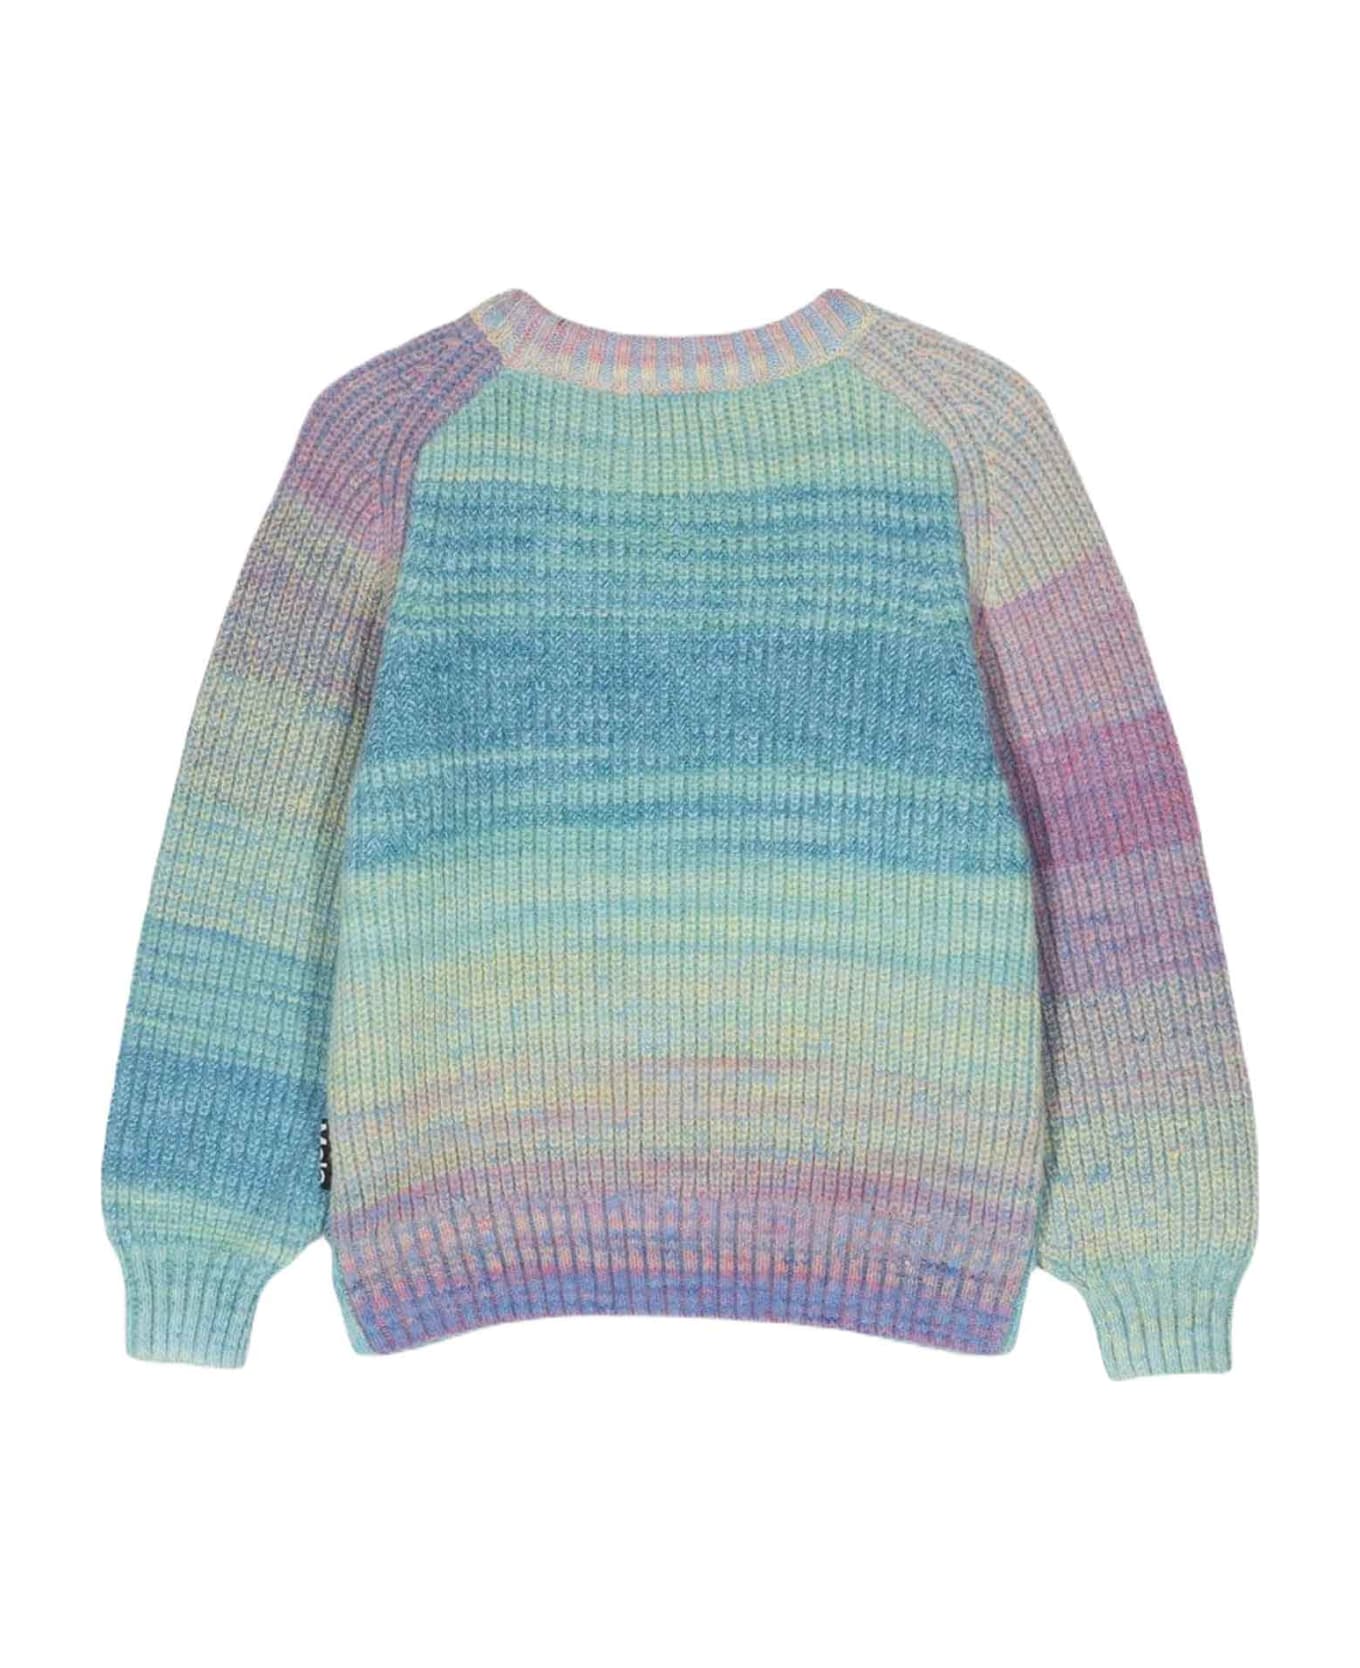 Molo Multicolor Sweater Unisex Kids - Multicolor シャツ